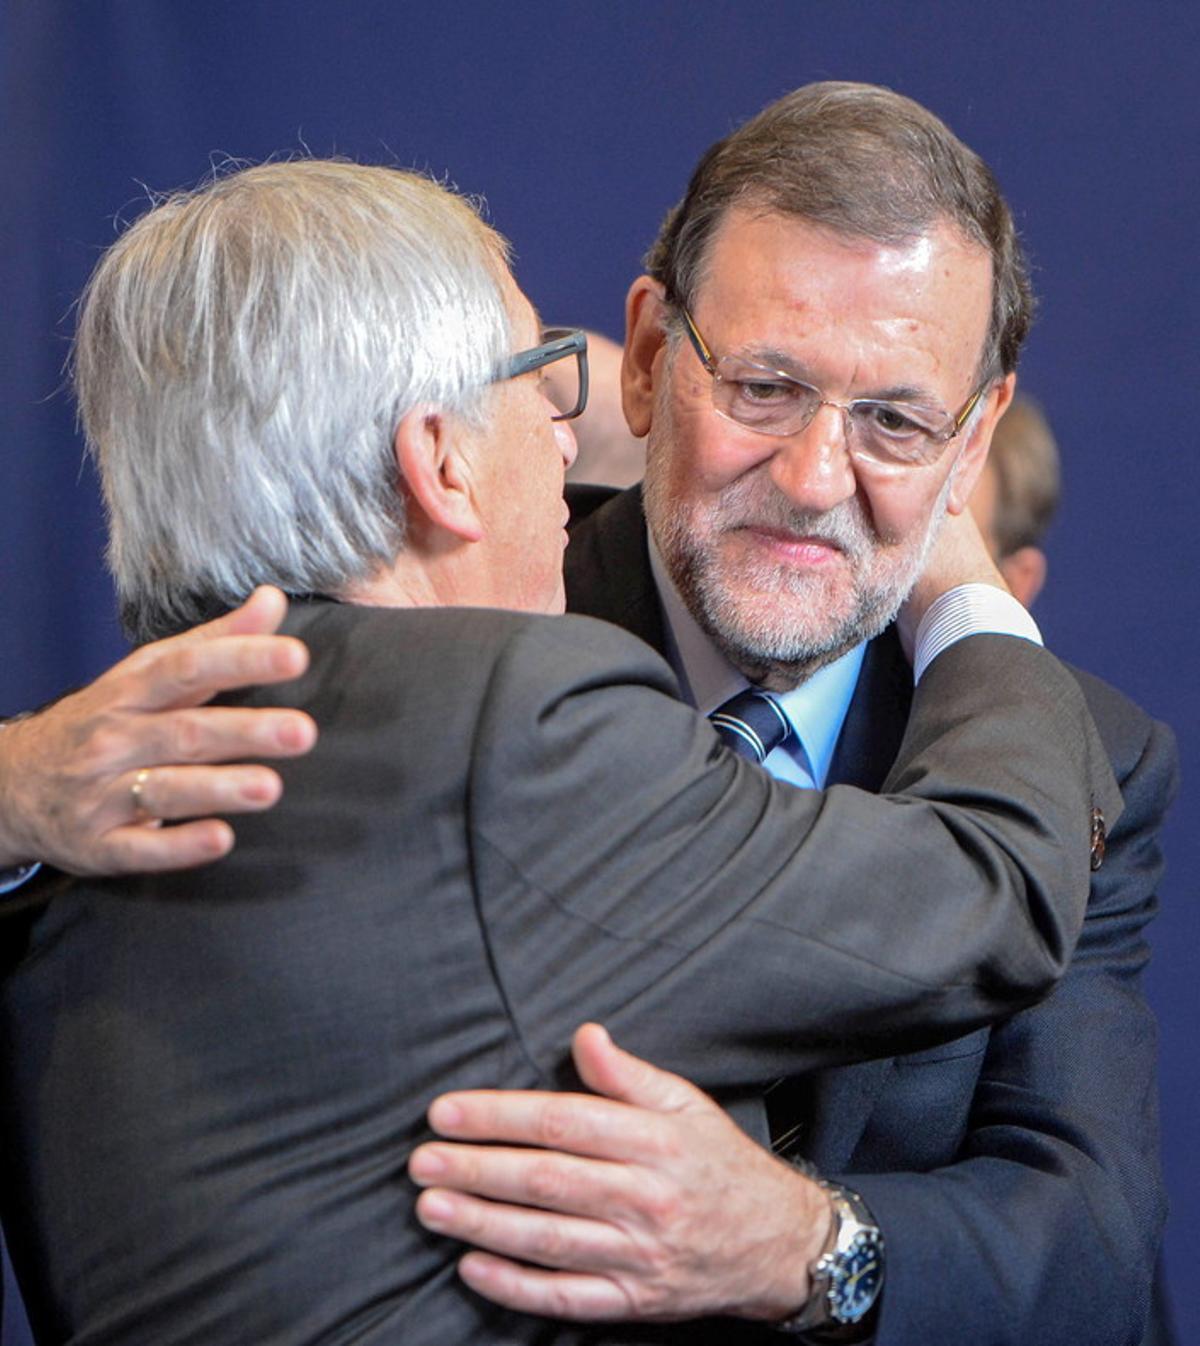 La UE felicita Rajoy i confia que doni "estabilitat política" a Espanya